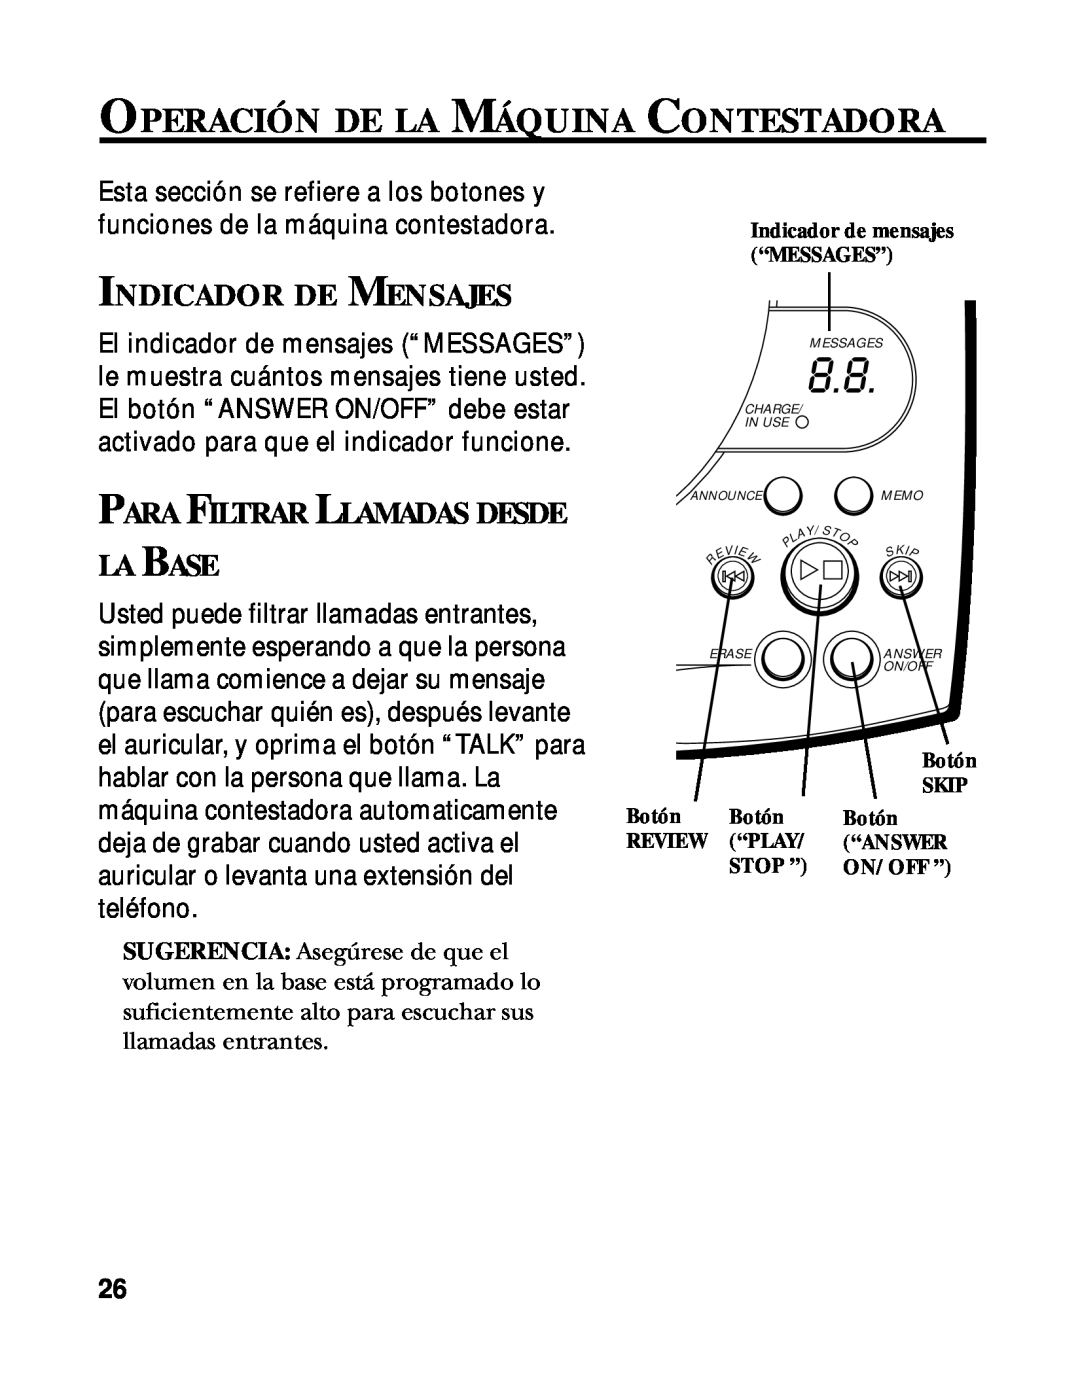 RCA 900 MHz manual Operación De La Máquina Contestadora, Indicador De Mensajes, La Base, Para Filtrar Llamadas Desde 